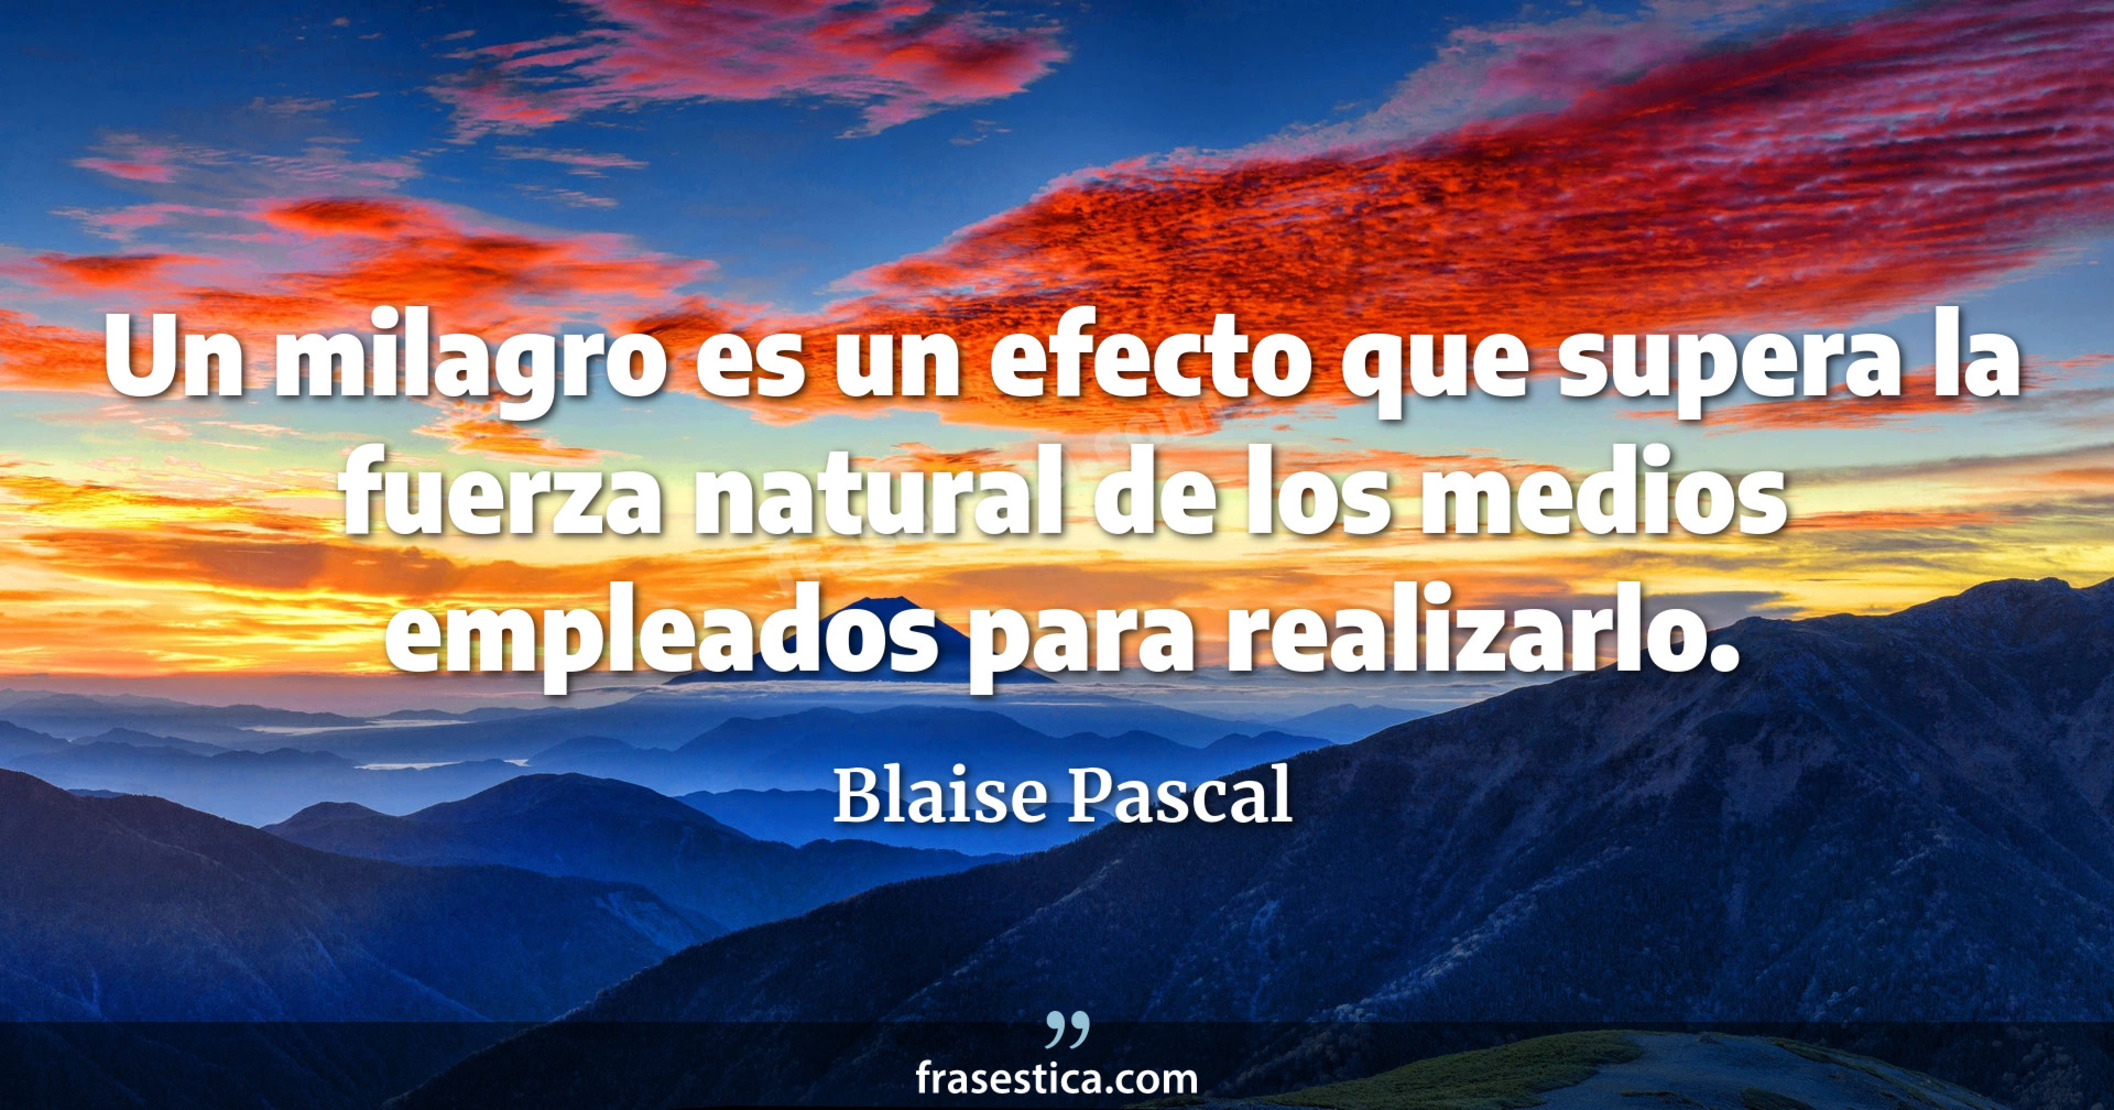 Un milagro es un efecto que supera la fuerza natural de los medios empleados para realizarlo. - Blaise Pascal